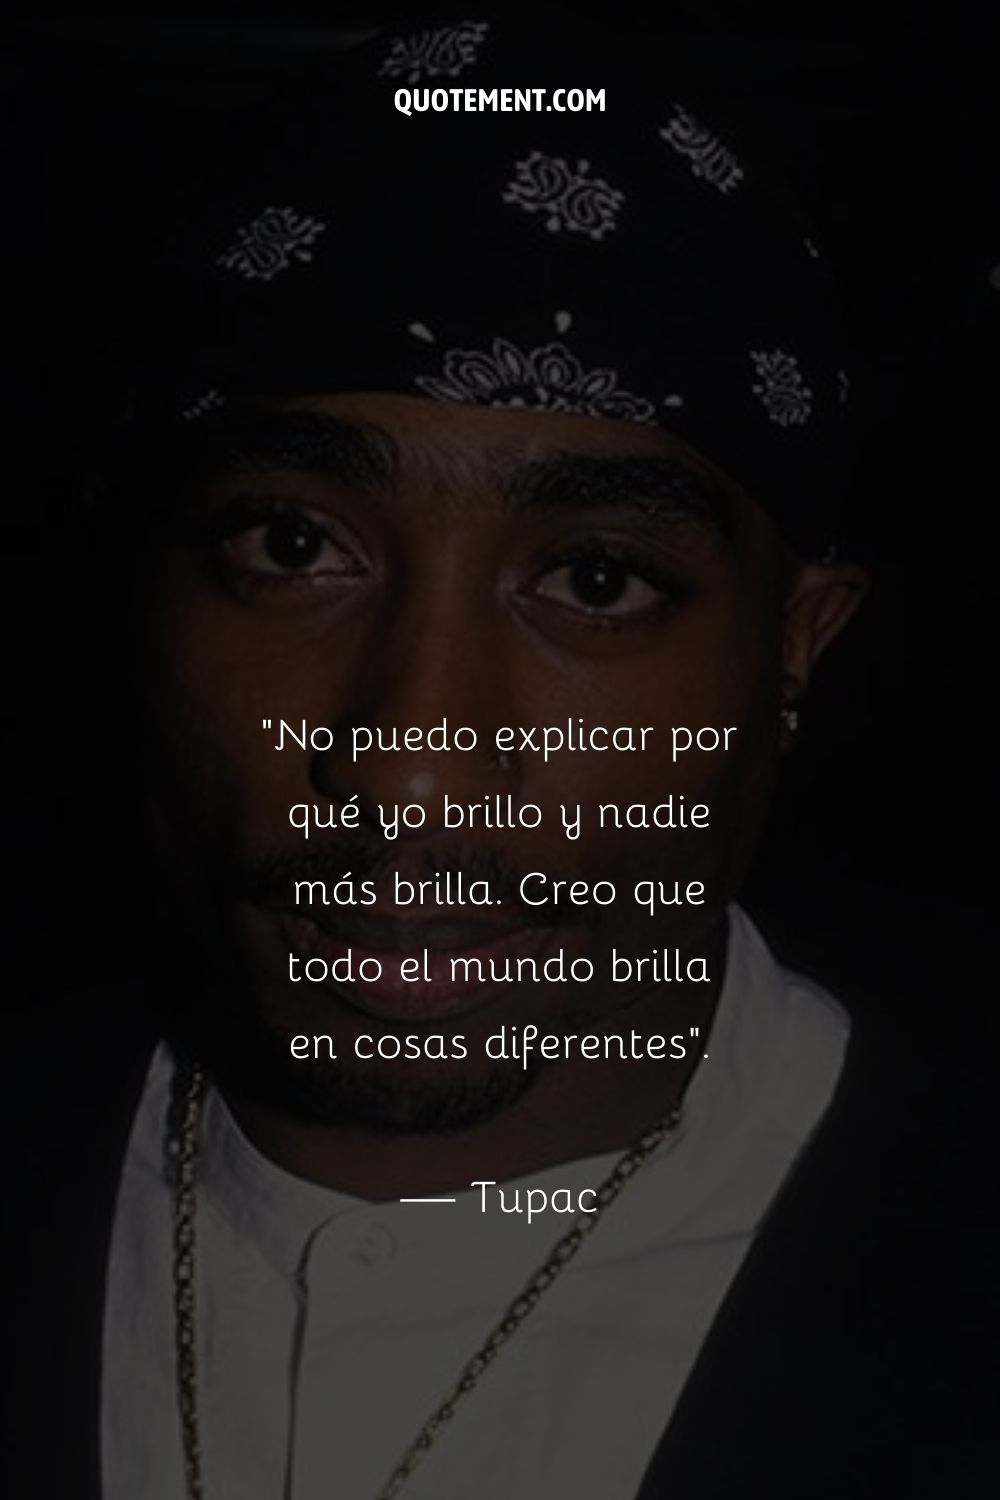 Cita célebre de Tupac para inspirarte.